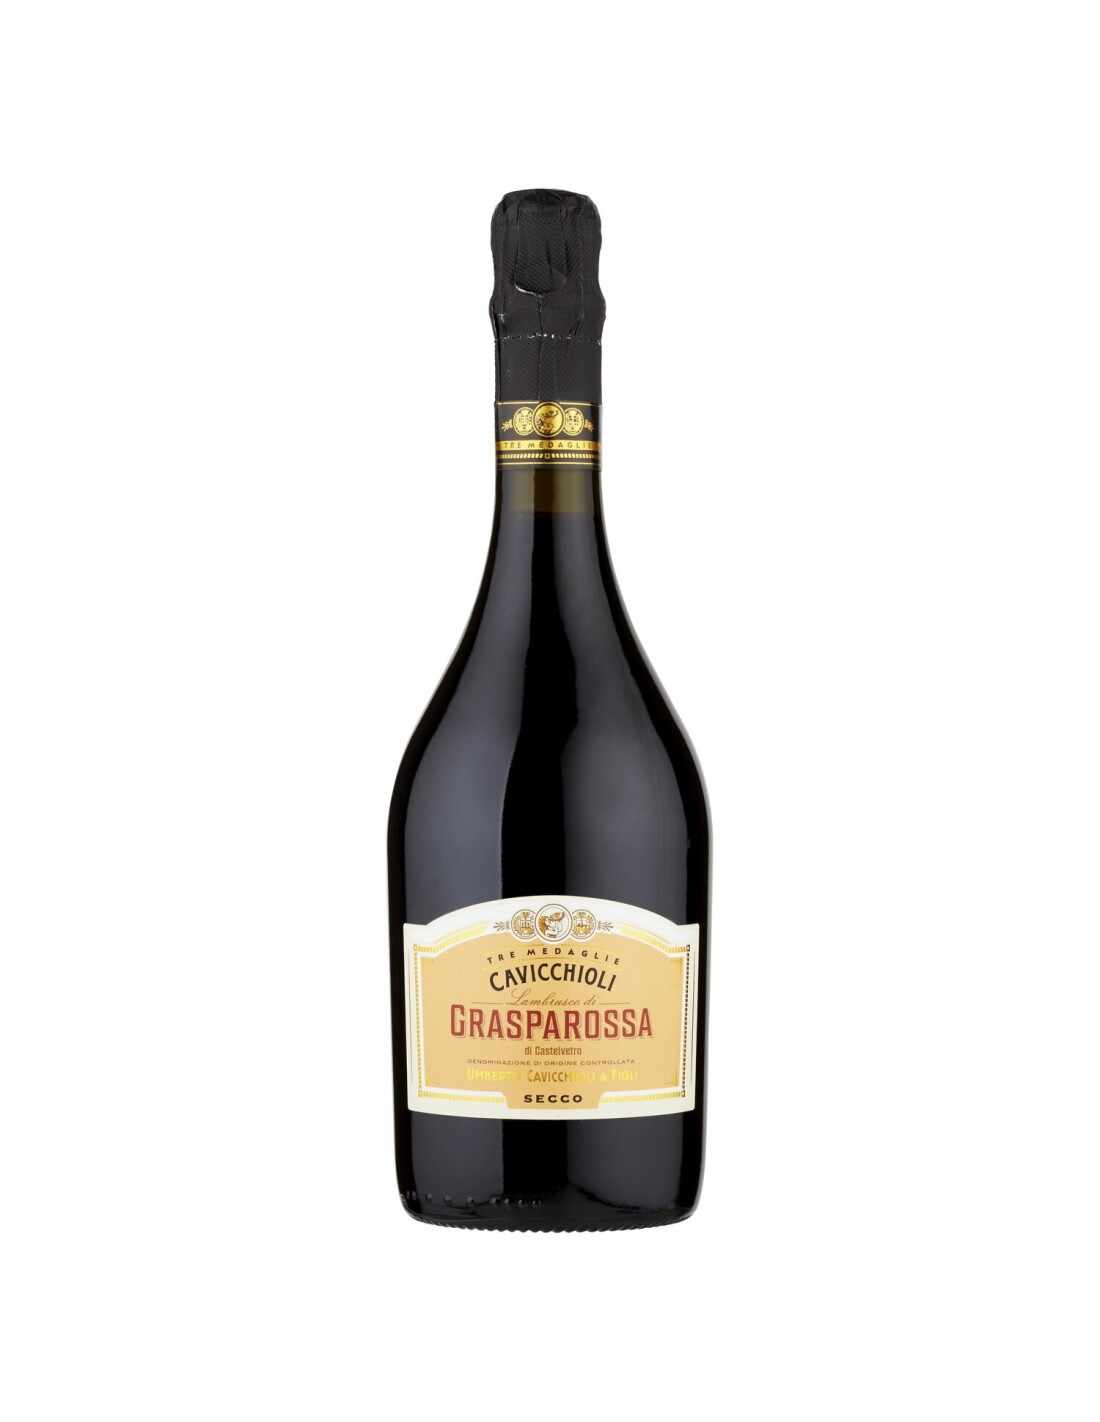 Vin frizzante Cavicchioli Grasparossa Secco, 11% alc., 0.75L, Italia